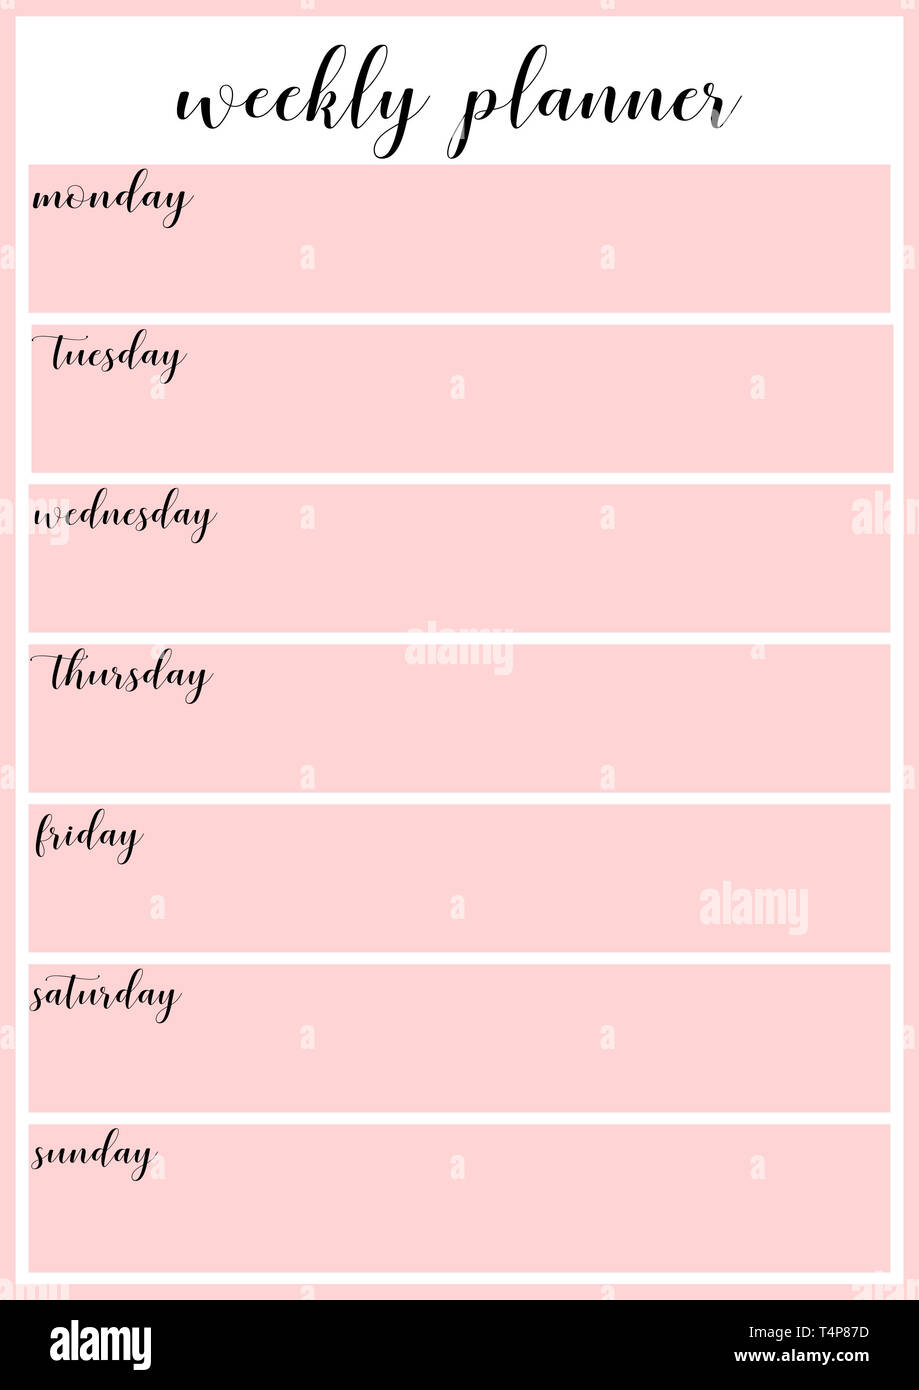 daily-planner-pink-girly-cute-weekly-planner-printable-garoto-reclamao